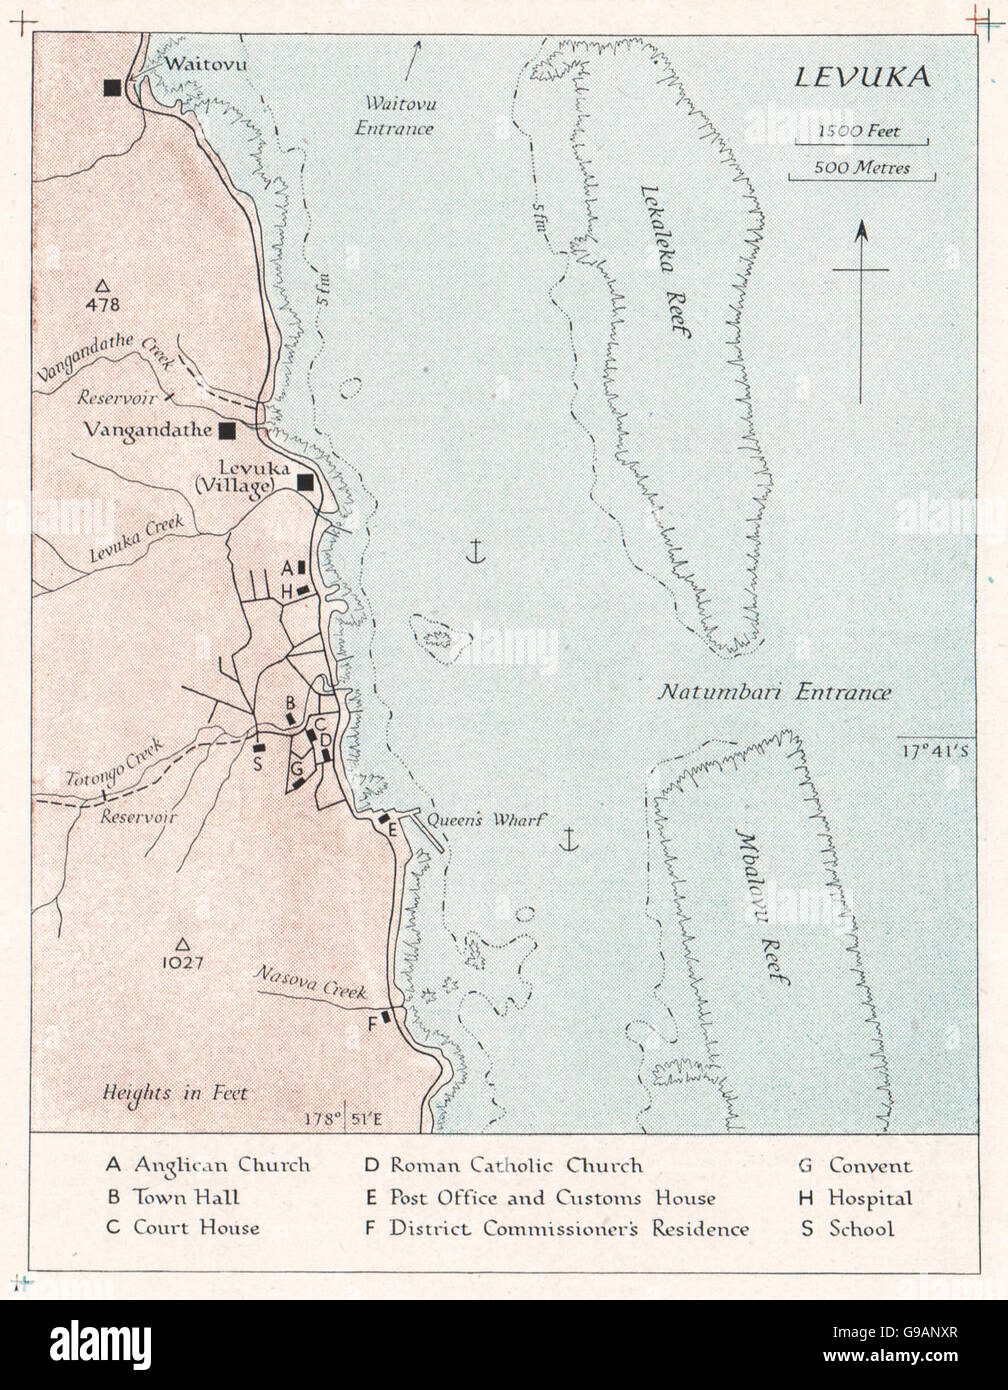 FIJI: Levuka. WW2 ROYAL NAVY INTELLIGENCE MAP, 1944 Stock Photo